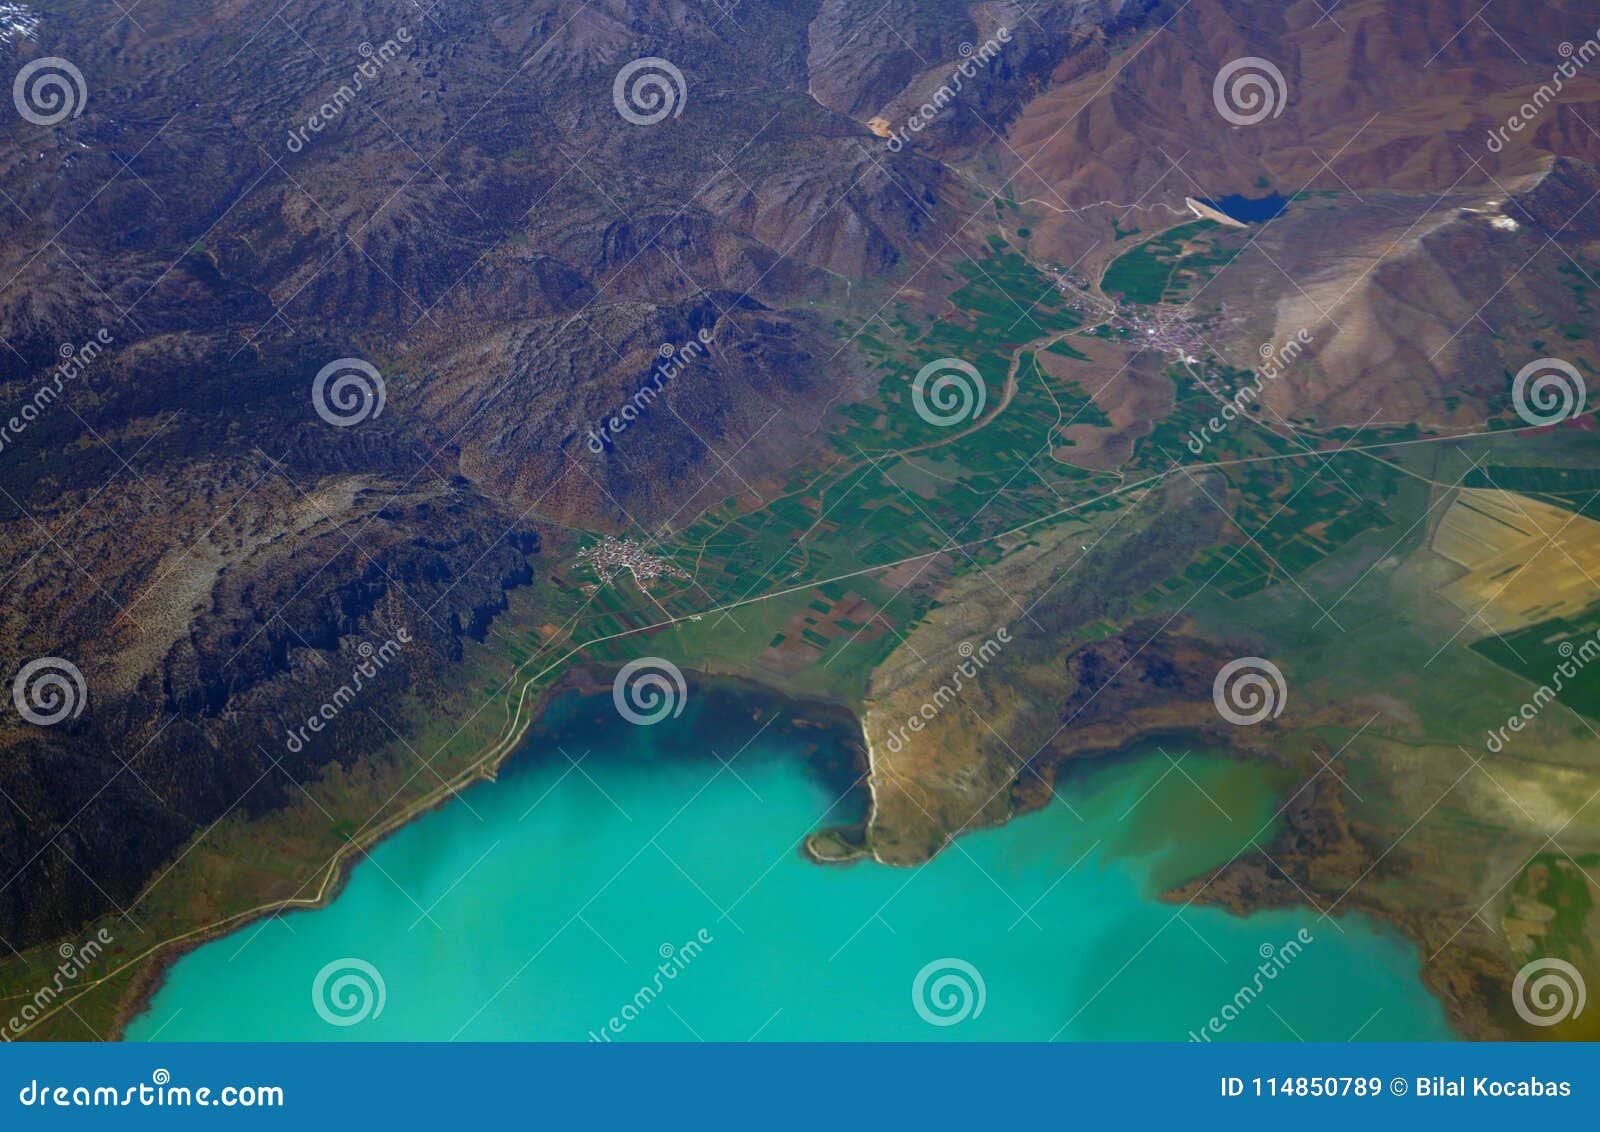 Aerial View Of Beysehir Lake In Konya Turkey Stock Image Image Of